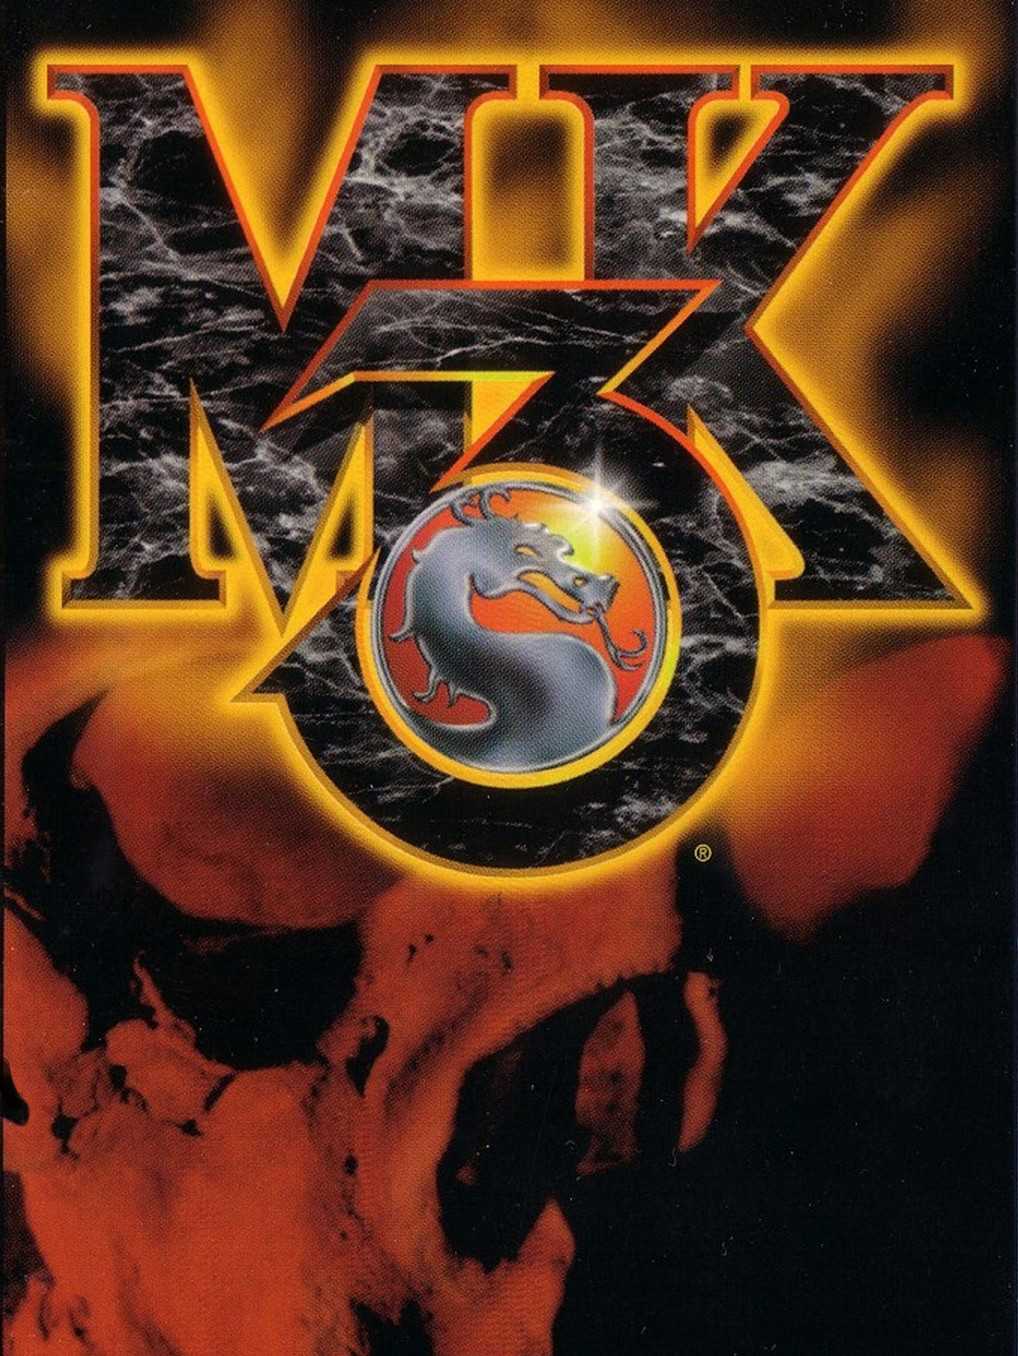 Mortal Kombat 3 cover